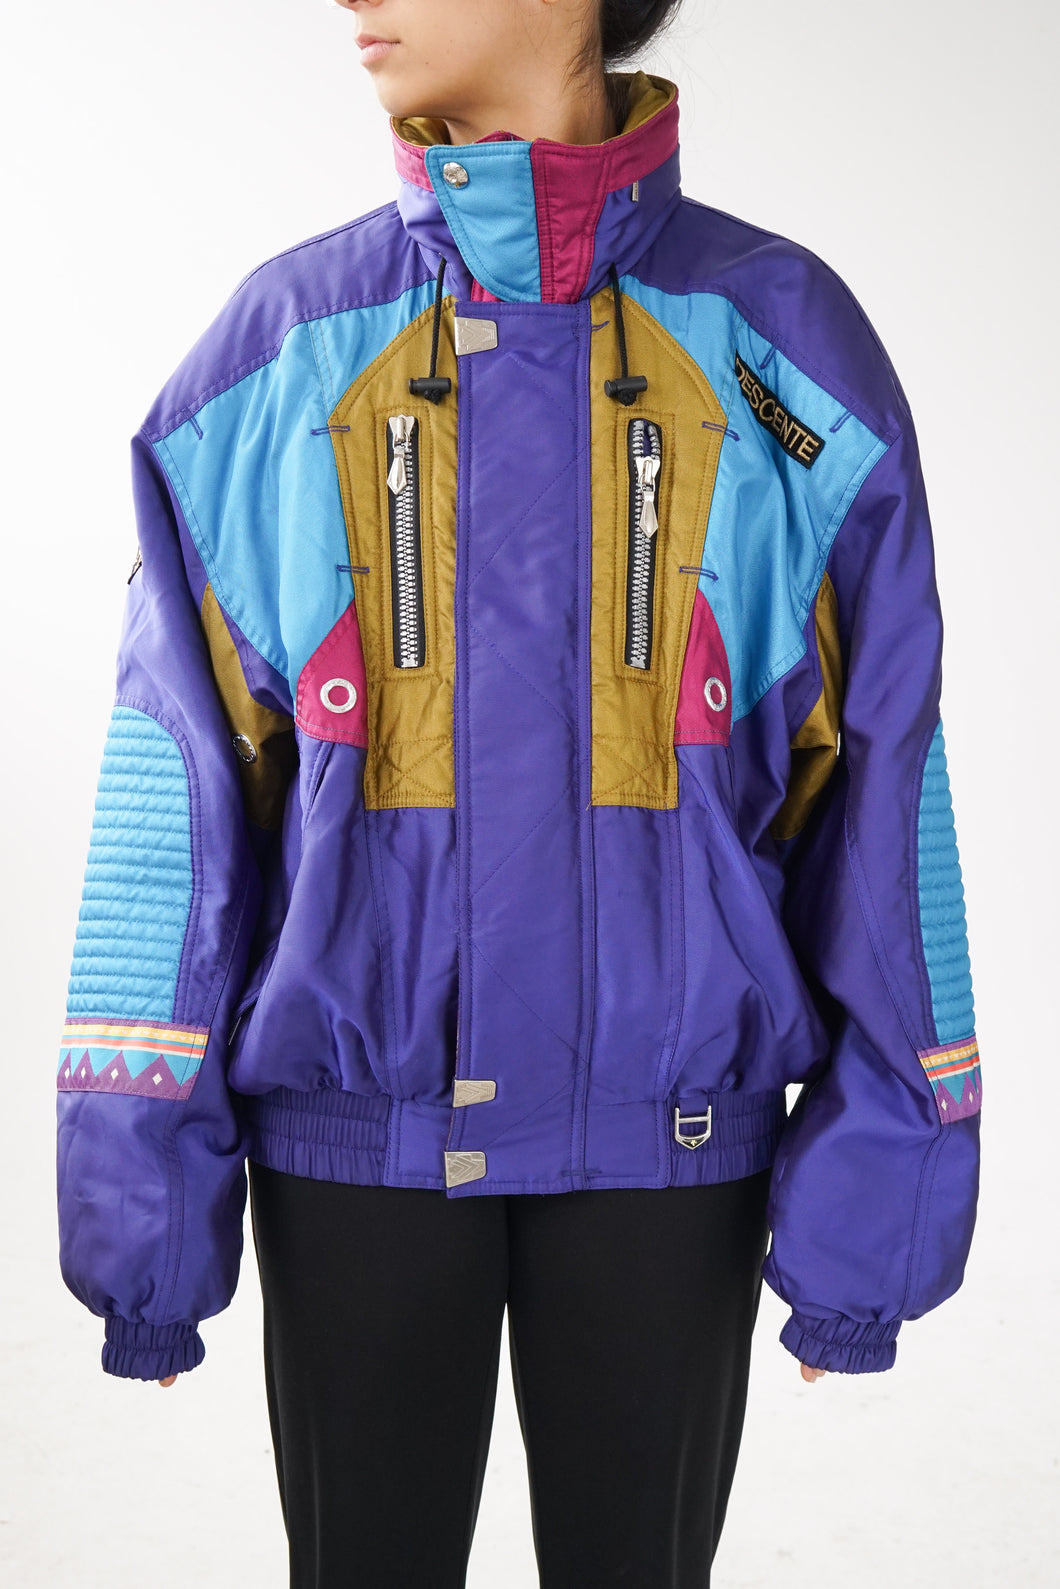 Manteau rétro ski vintage Descente à motifs étallique pour homme taille L